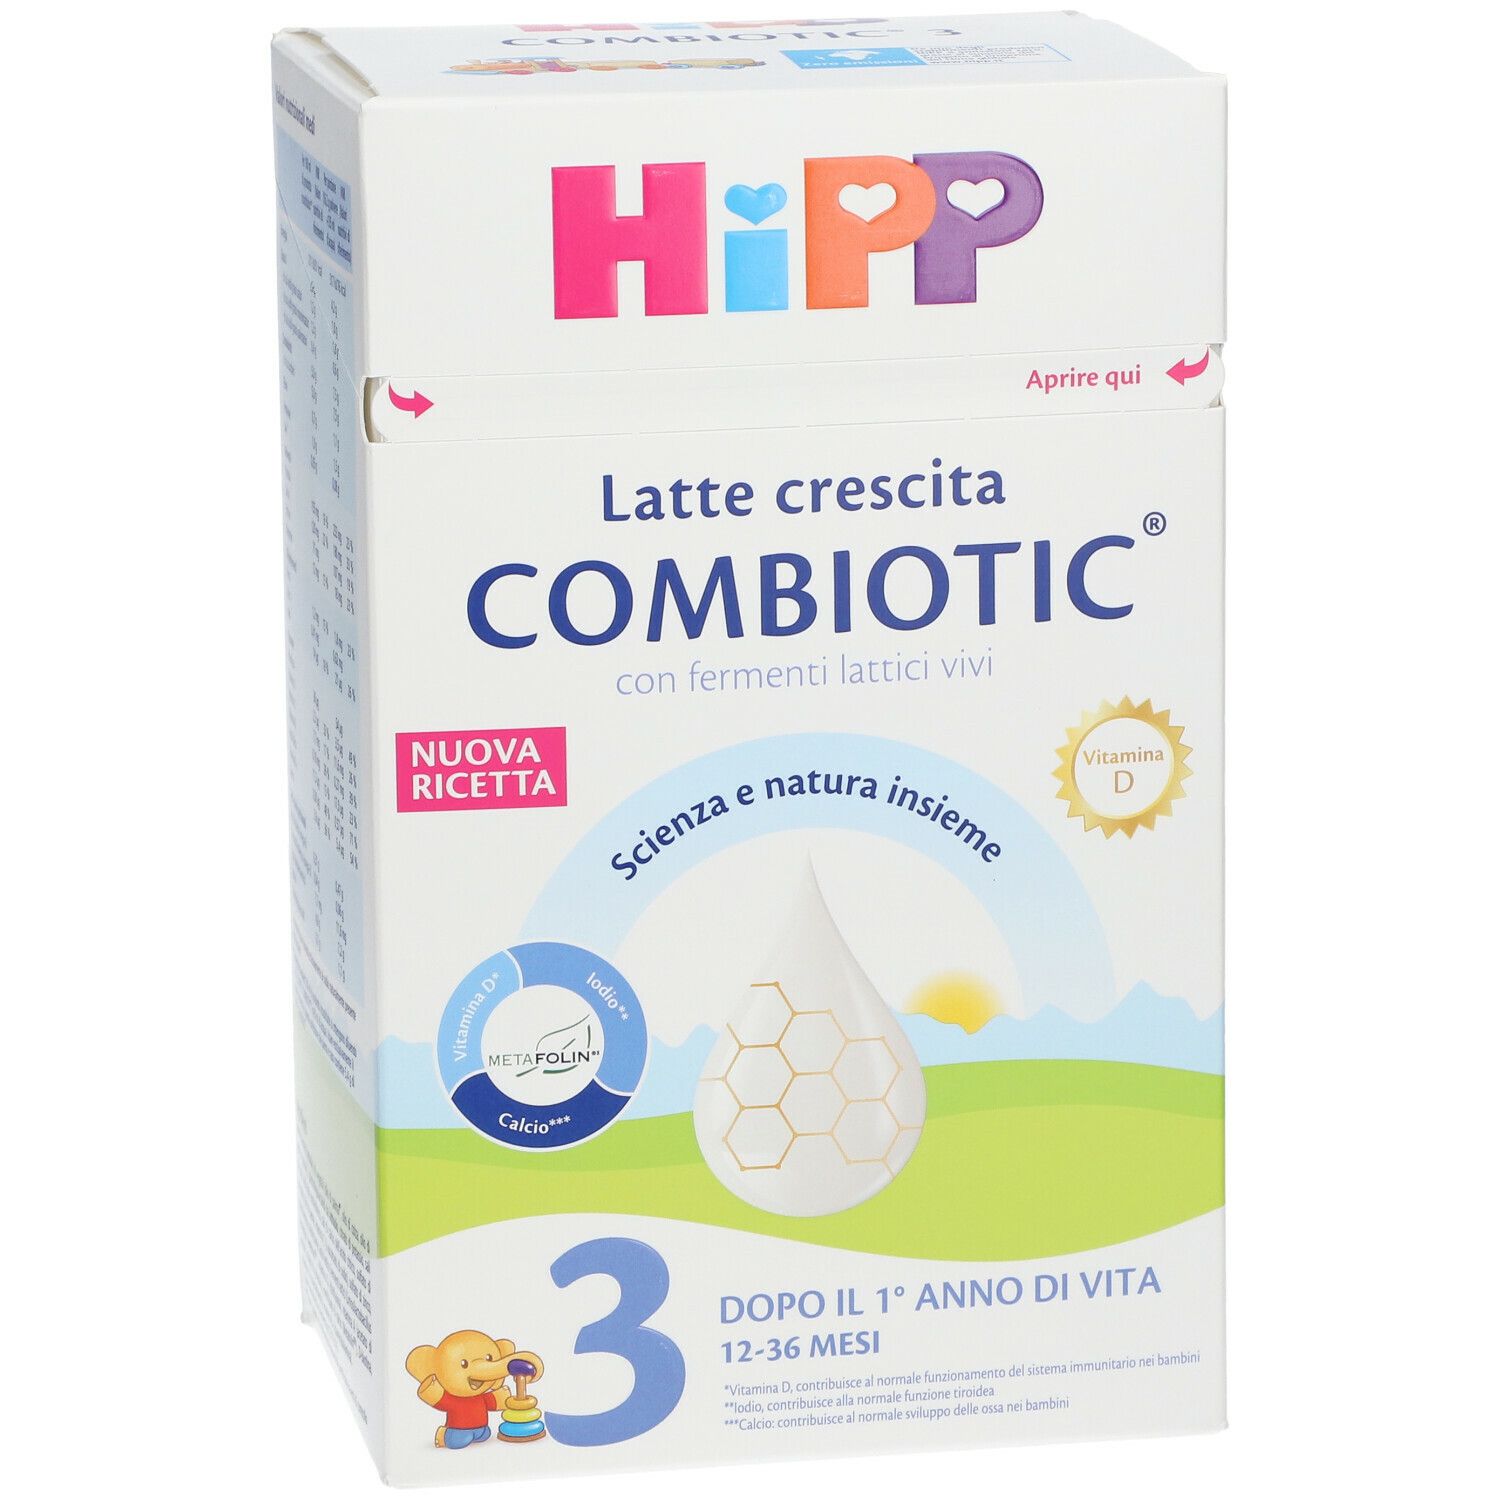 HiPP Latte crescita HiPP 3 COMBIOTIC®